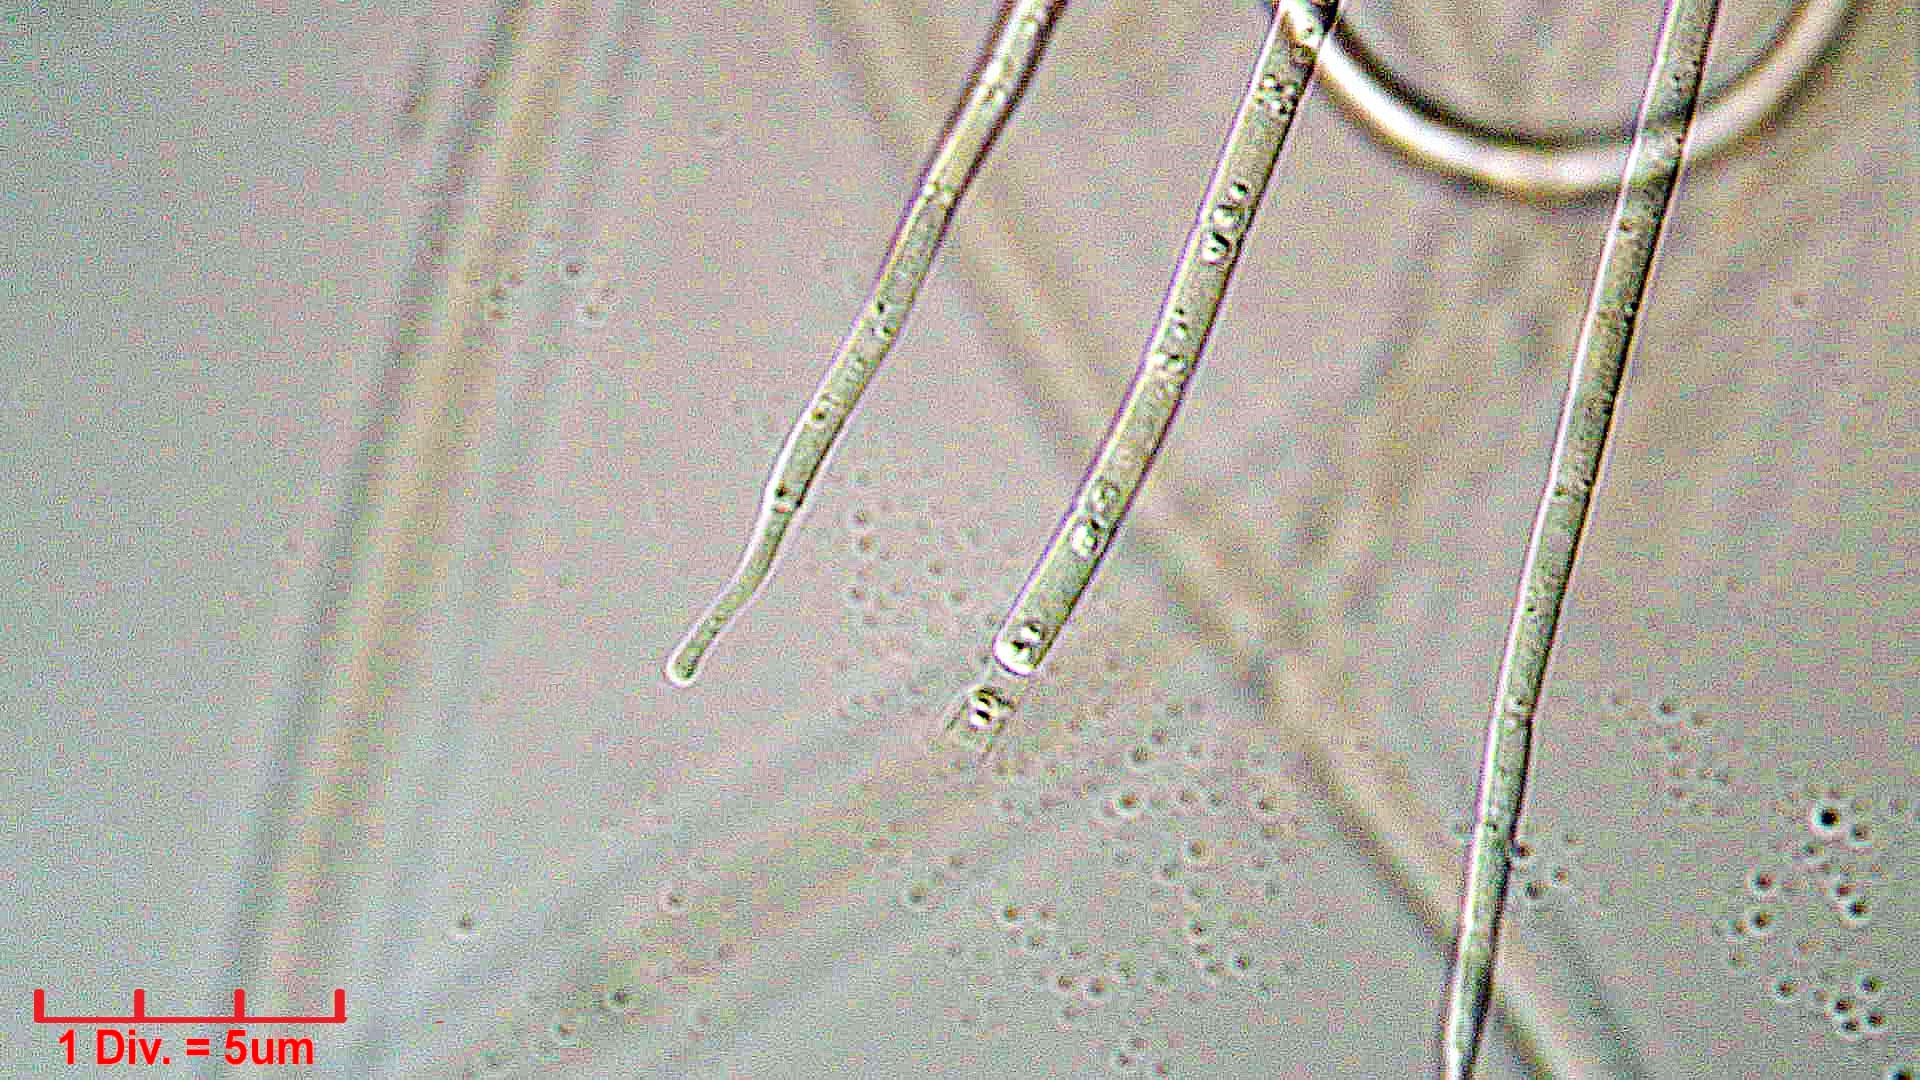 ./././Cyanobacteria/Oscillatoriales/Coleofasciculaceae/Geitlerinema/splendidum/294.jpg